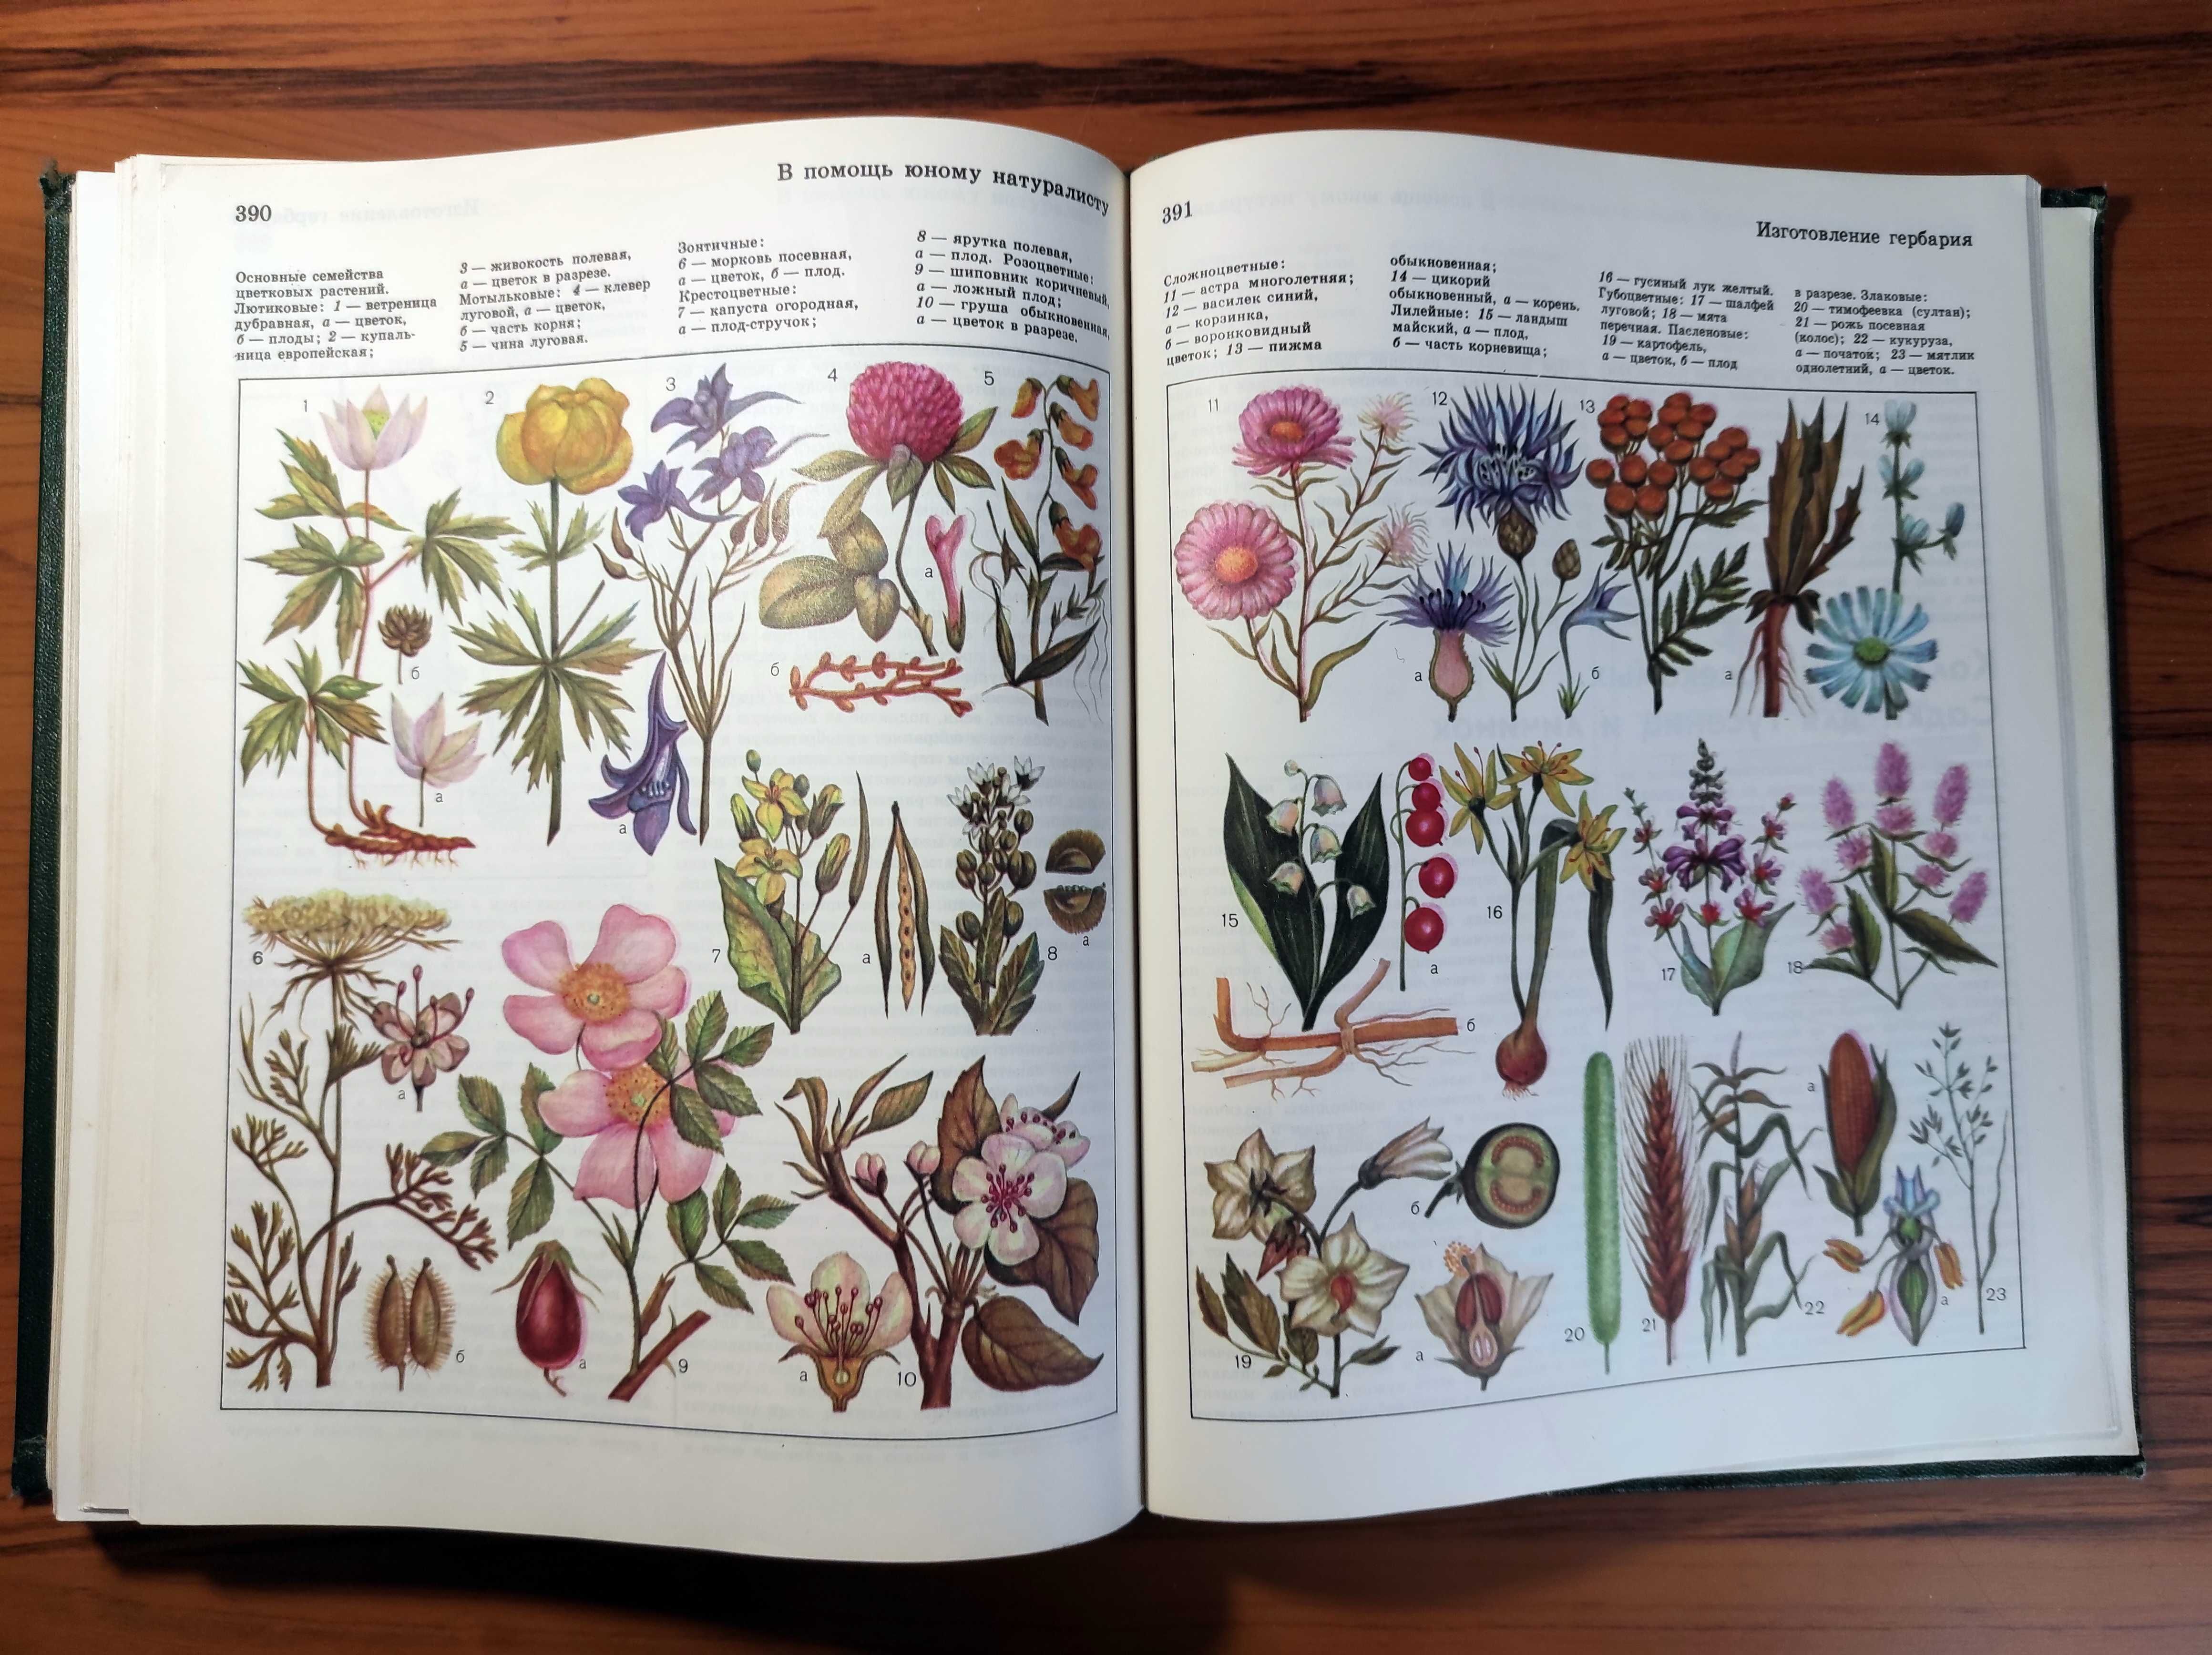 Детская энциклопедия. Том 4. Растения и животные (1973) - 447 с.